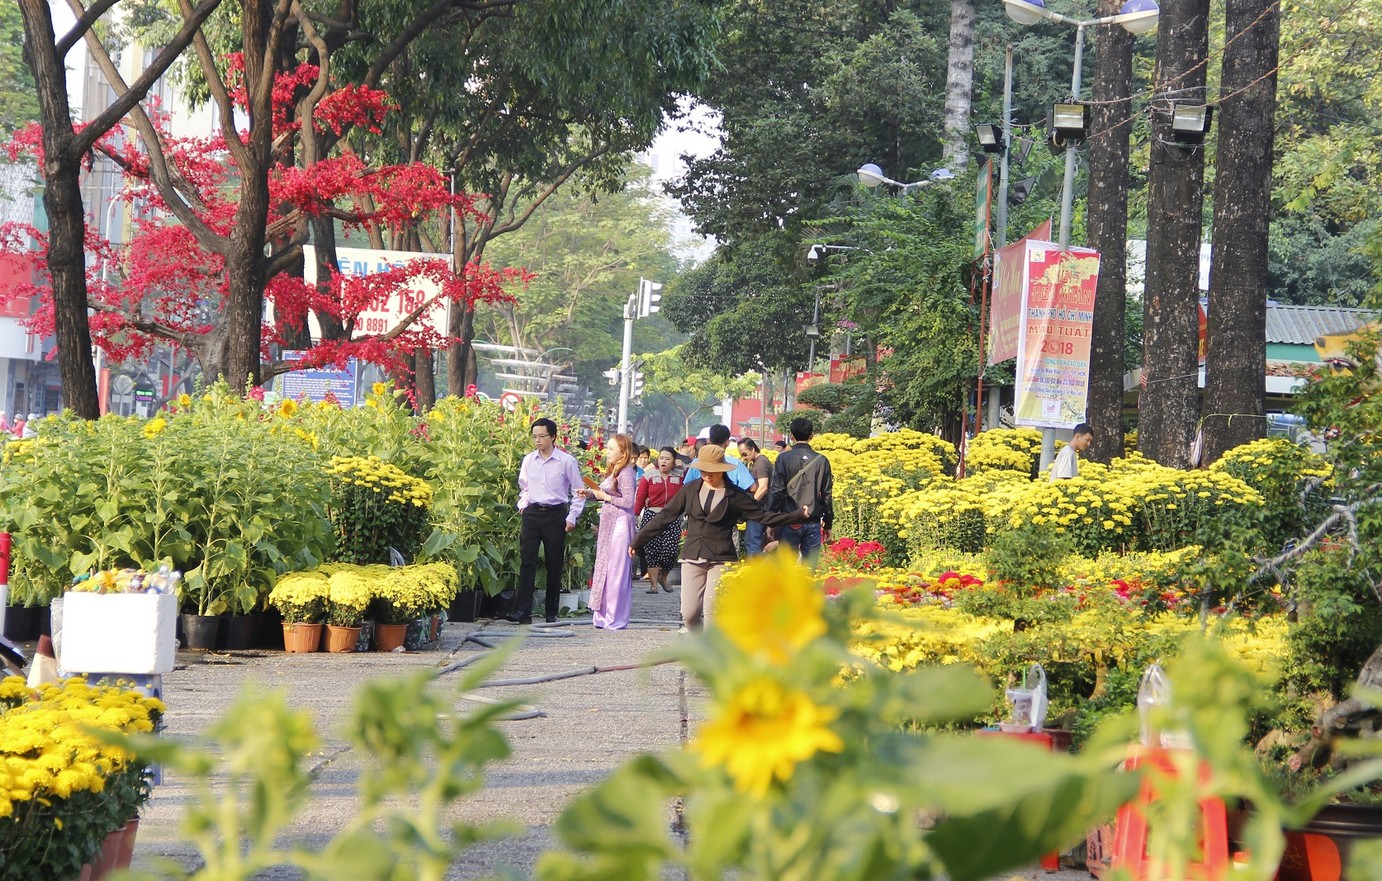 Thành phố Hồ Chí Minh trở thành vùng xanh, du khách đi chơi ở đâu dịp Tết Nhâm Dần 2022 - Ảnh 4.